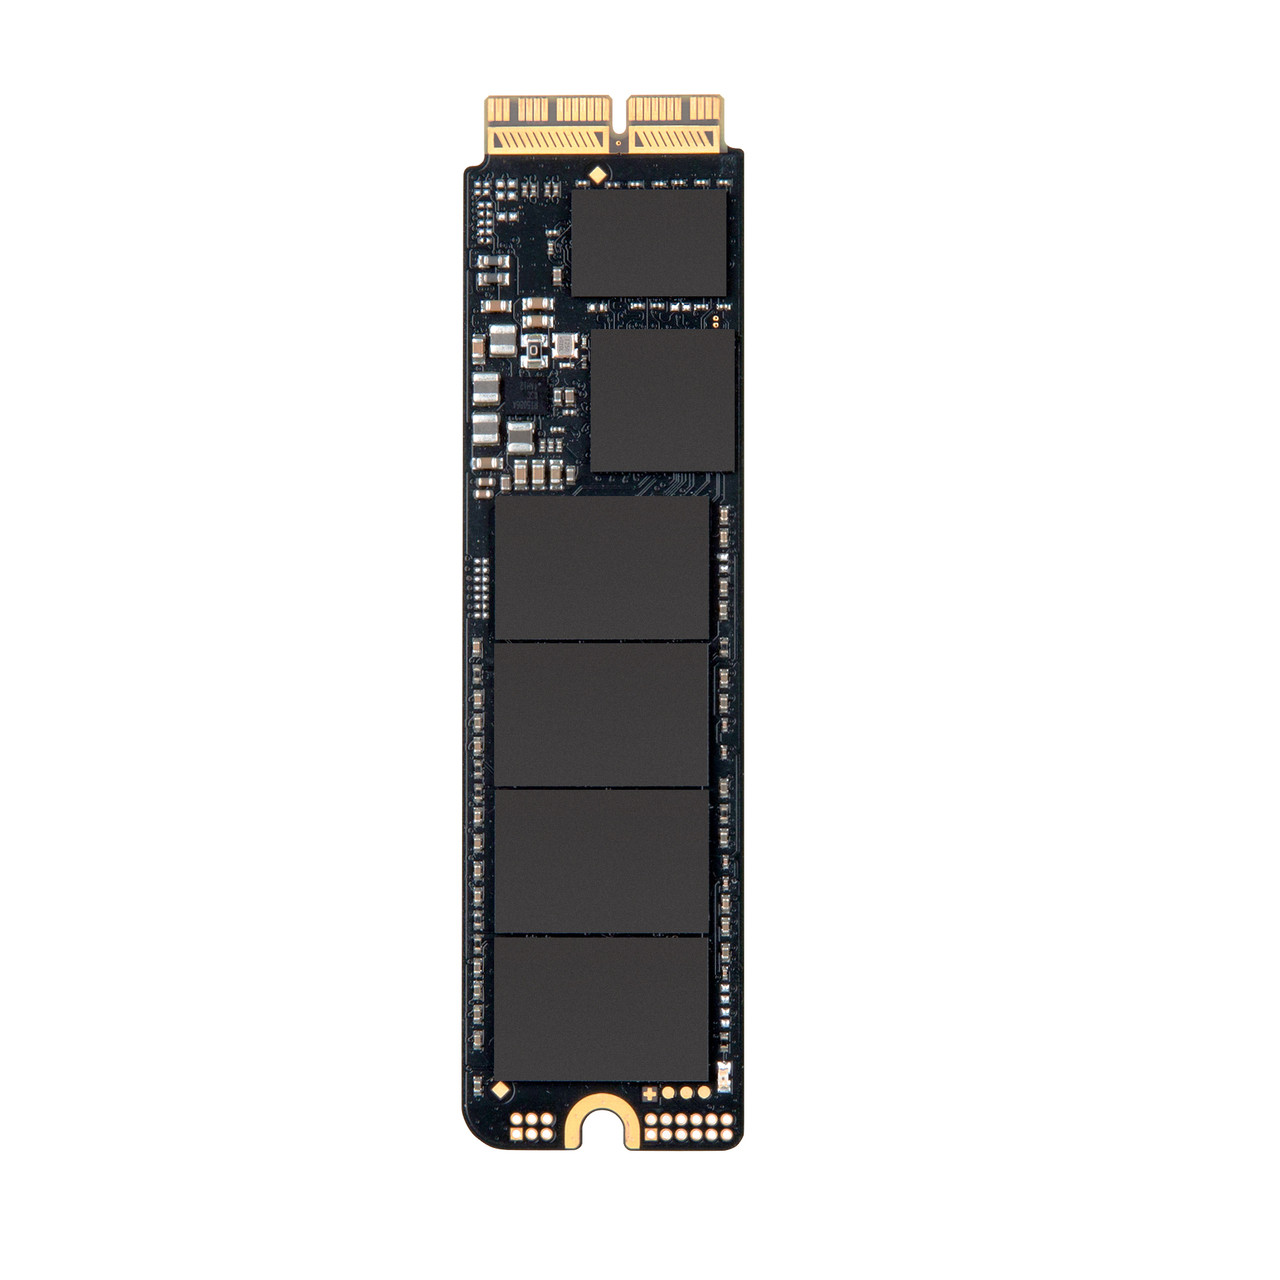 Transcend JetDrive 820 240GB SSD Upgrade Kit